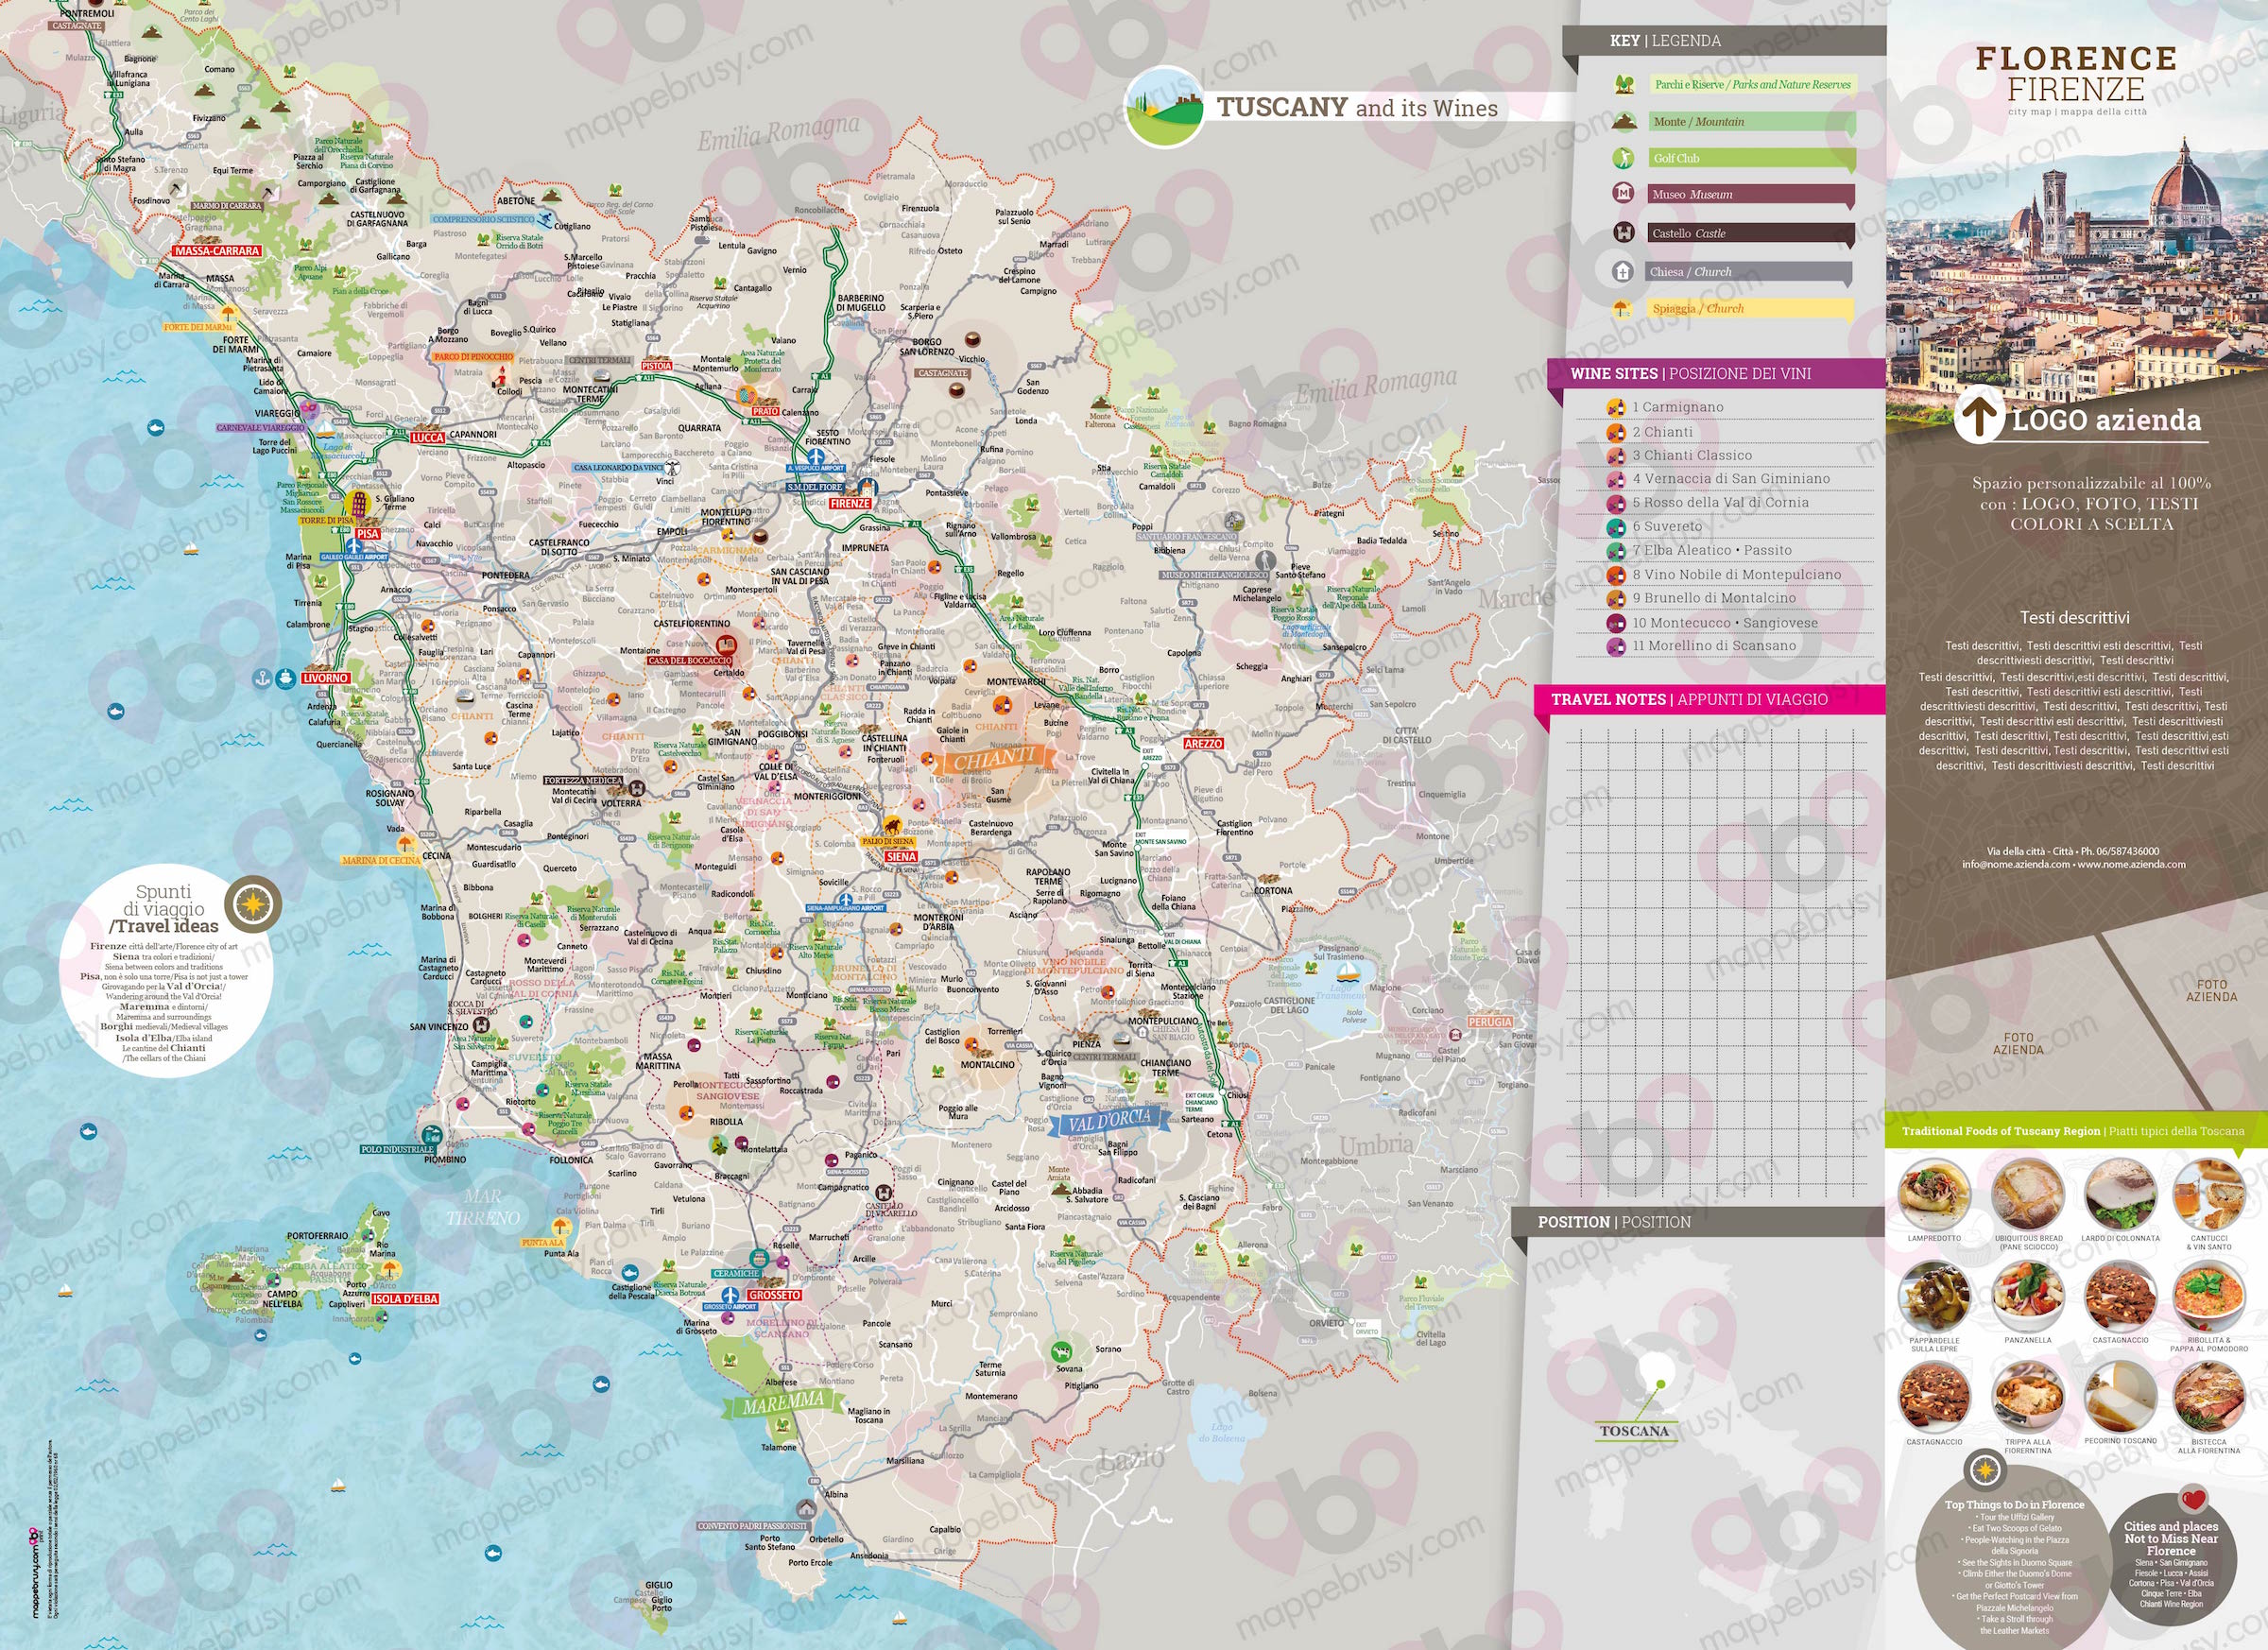 Mappa della Toscana - Tuscany map - mappa Toscana - mappa personalizzata della Toscana - mappa tursitica della Toscana